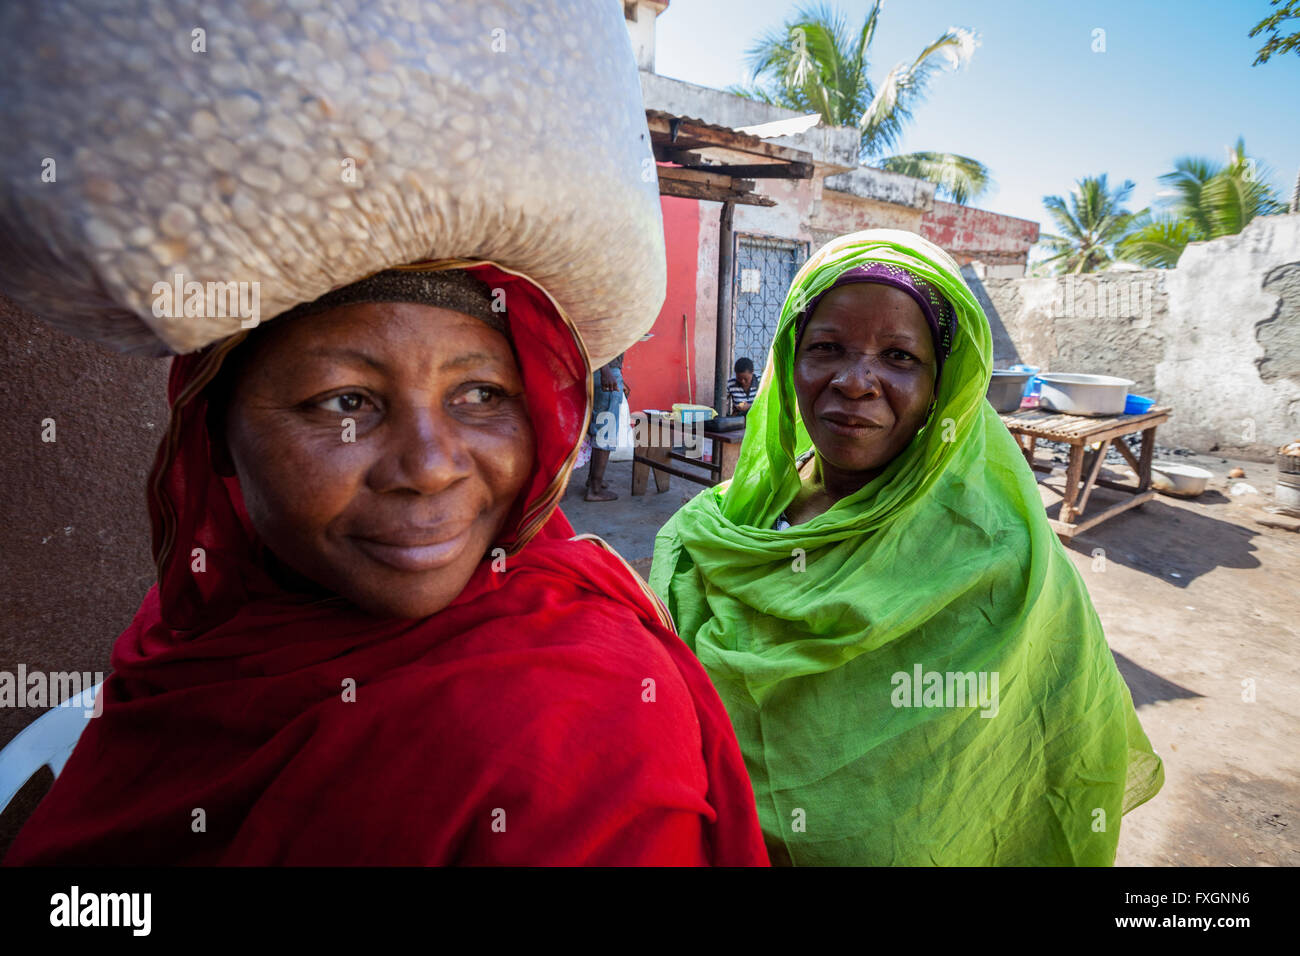 Mozambico,le donne a piedi in strada in abiti colorati e velo, con carrello sulla testa. Foto Stock